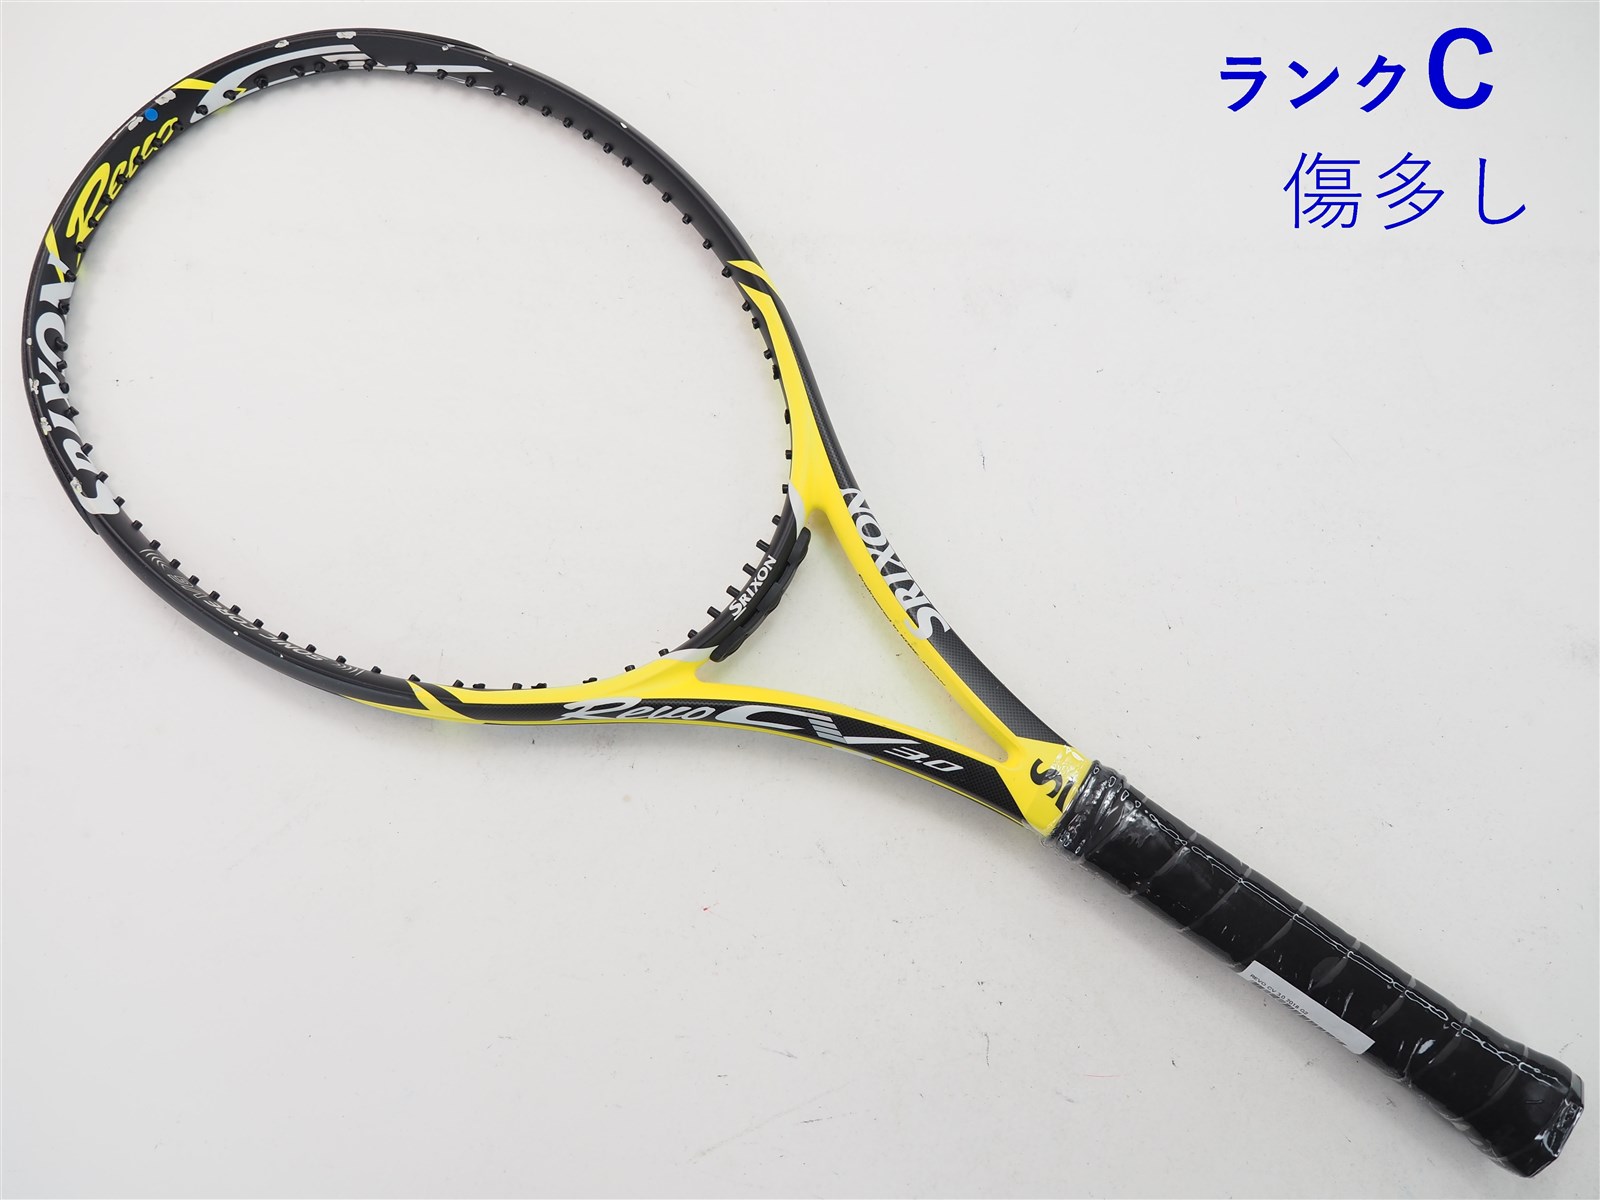 テニスラケット スリクソン レヴォ CS 10.0 2018年モデル (G2)SRIXON REVO CS 10.0 2018